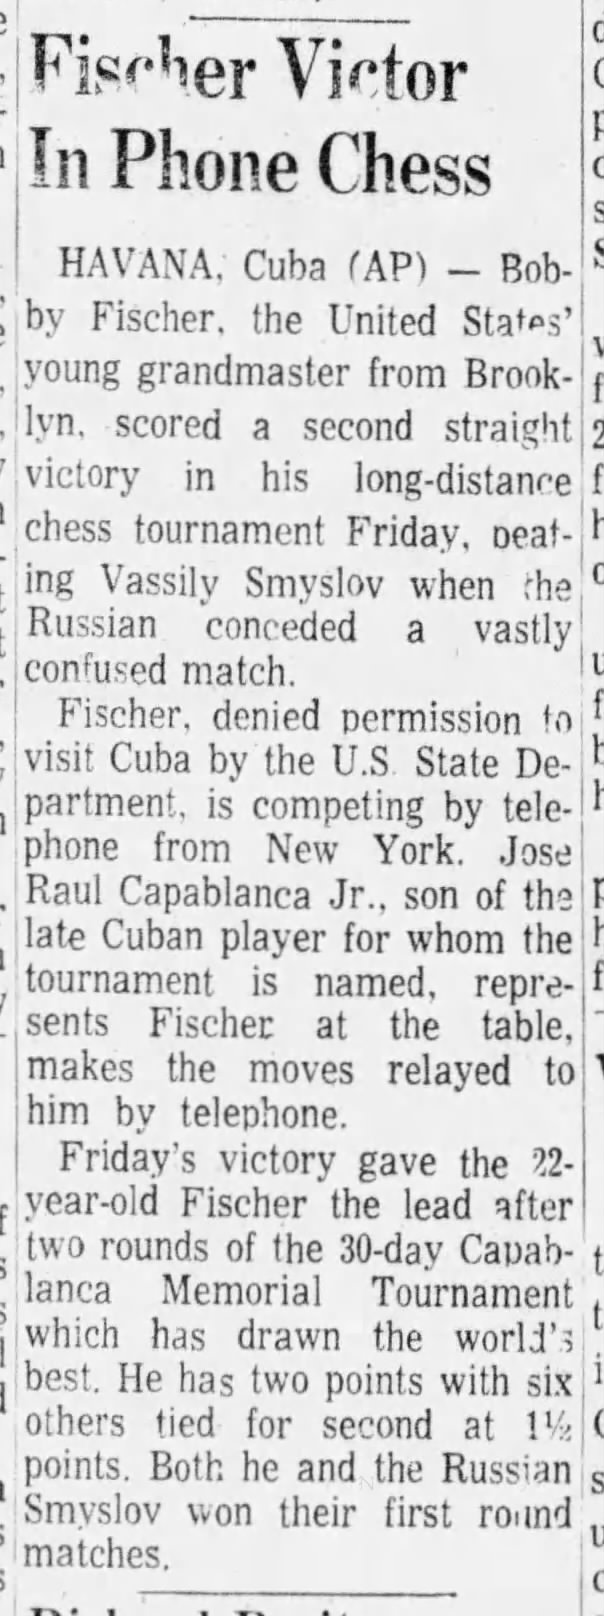 Fischer Victor In Phone Chess